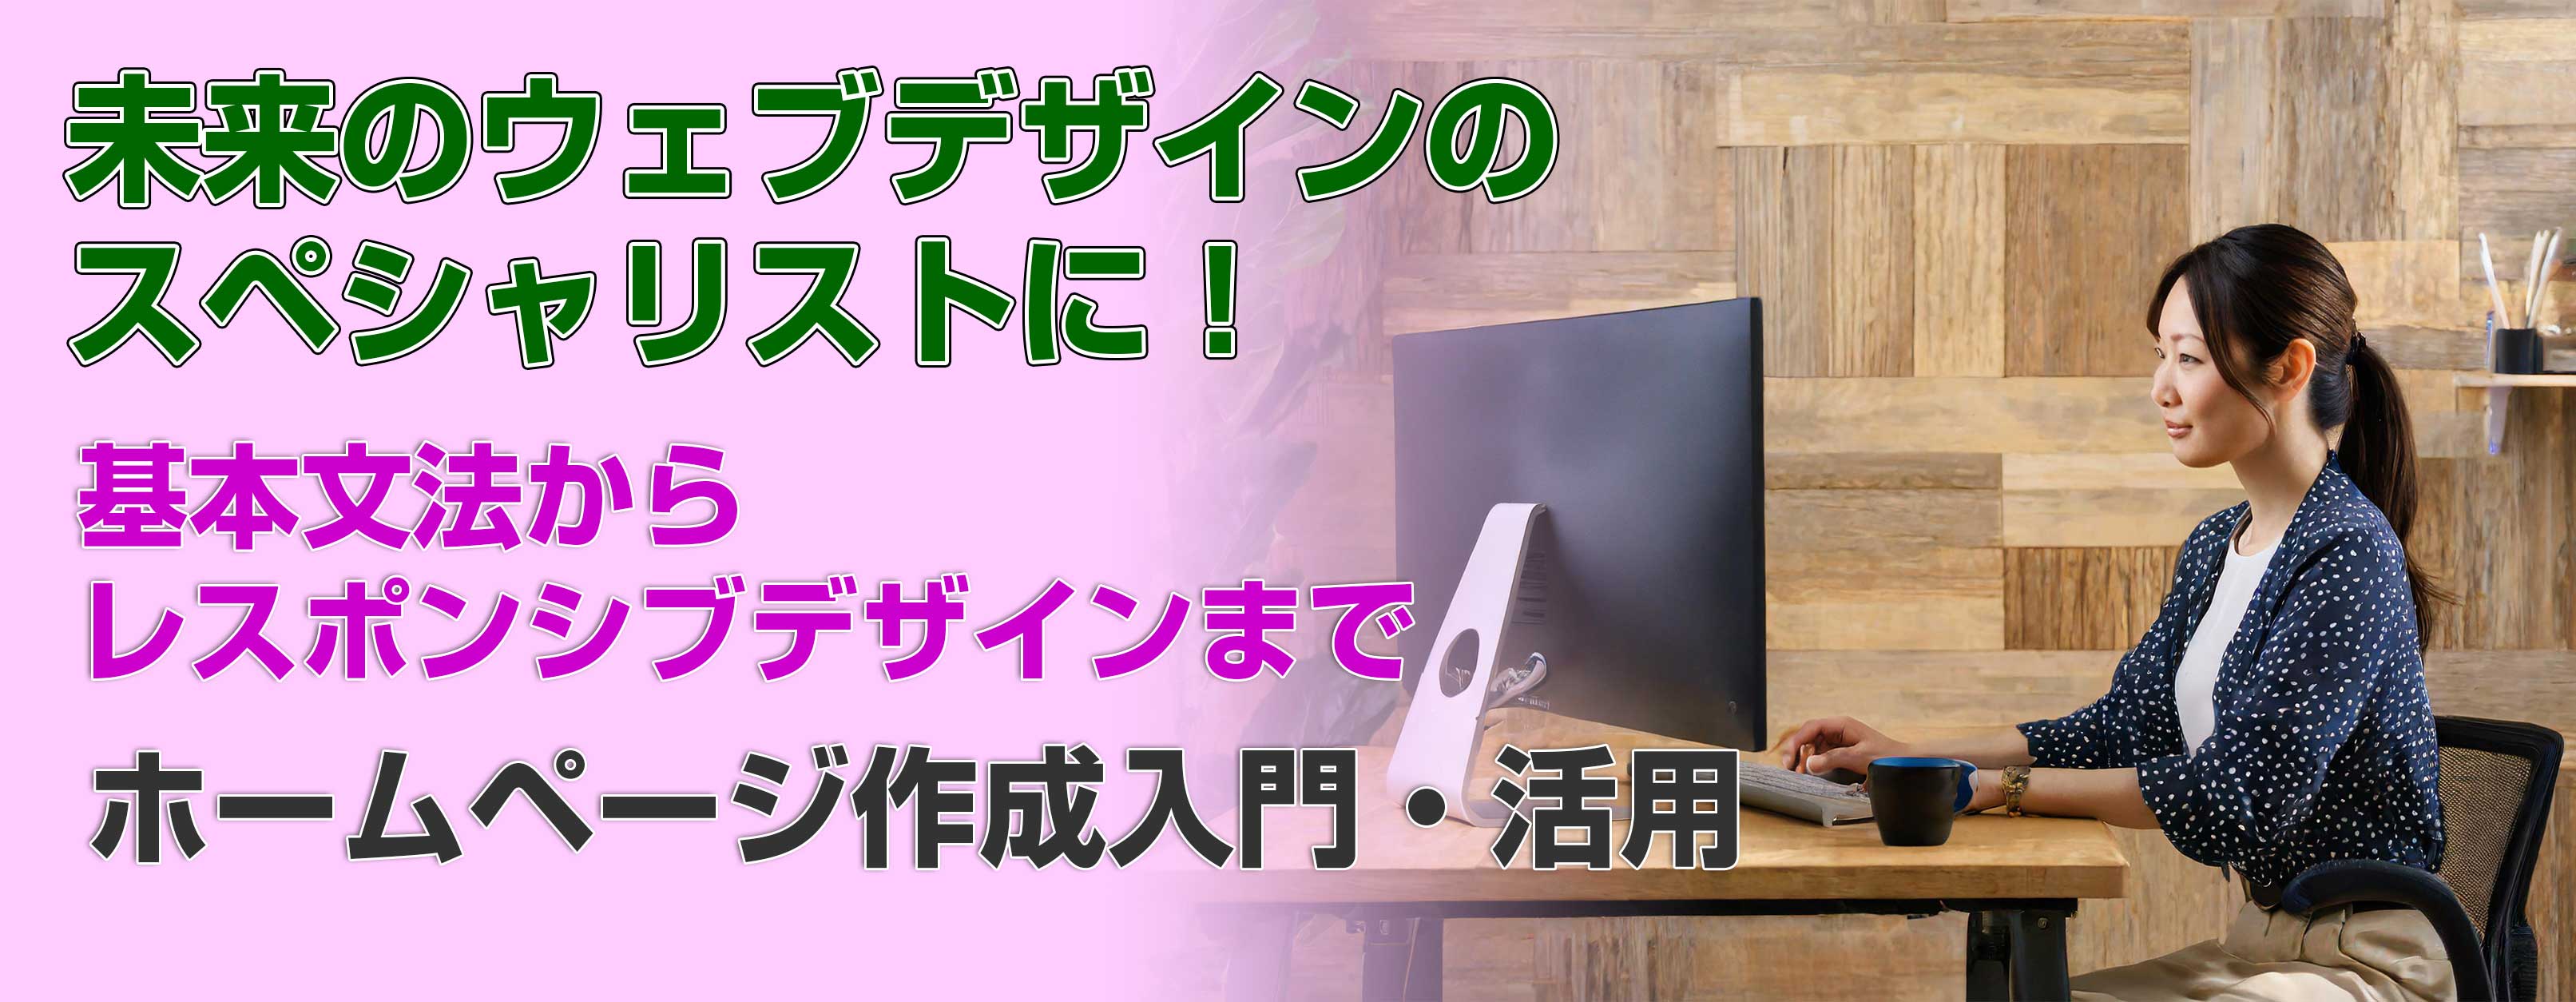 姫路・明石でホームページ制作を学べるパソコン教室